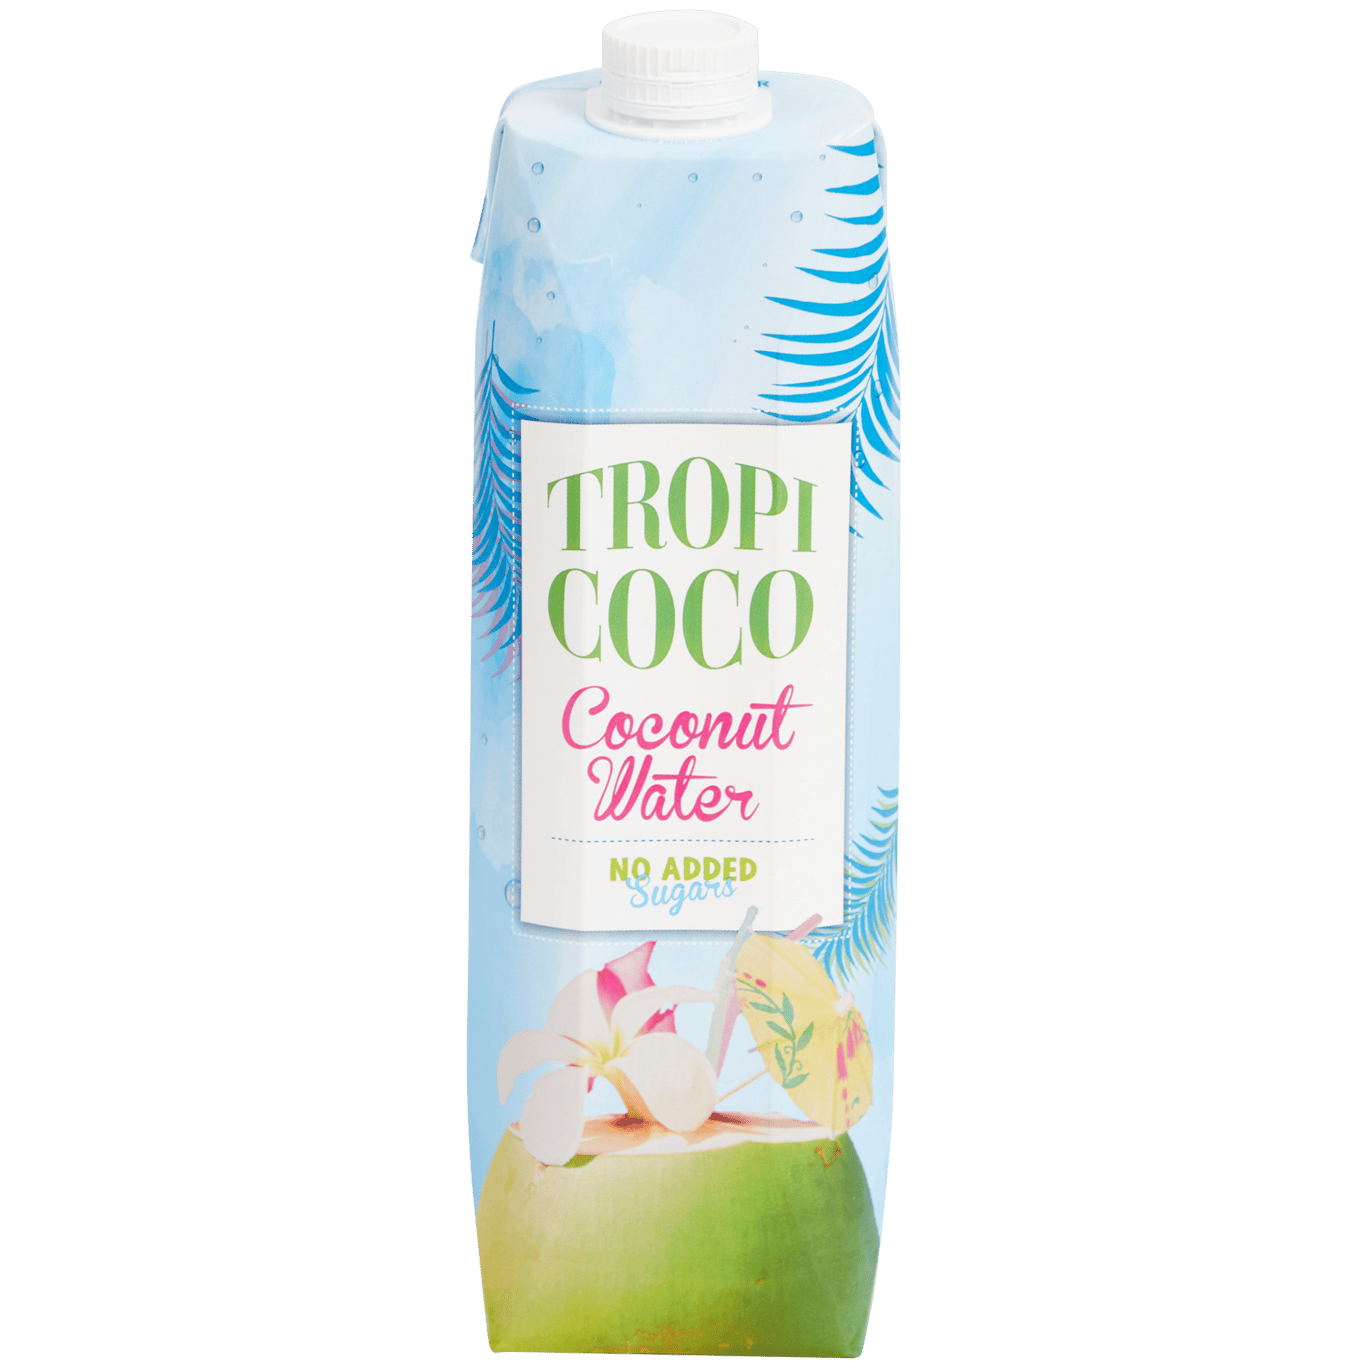 Agua de coco Tropi-coco